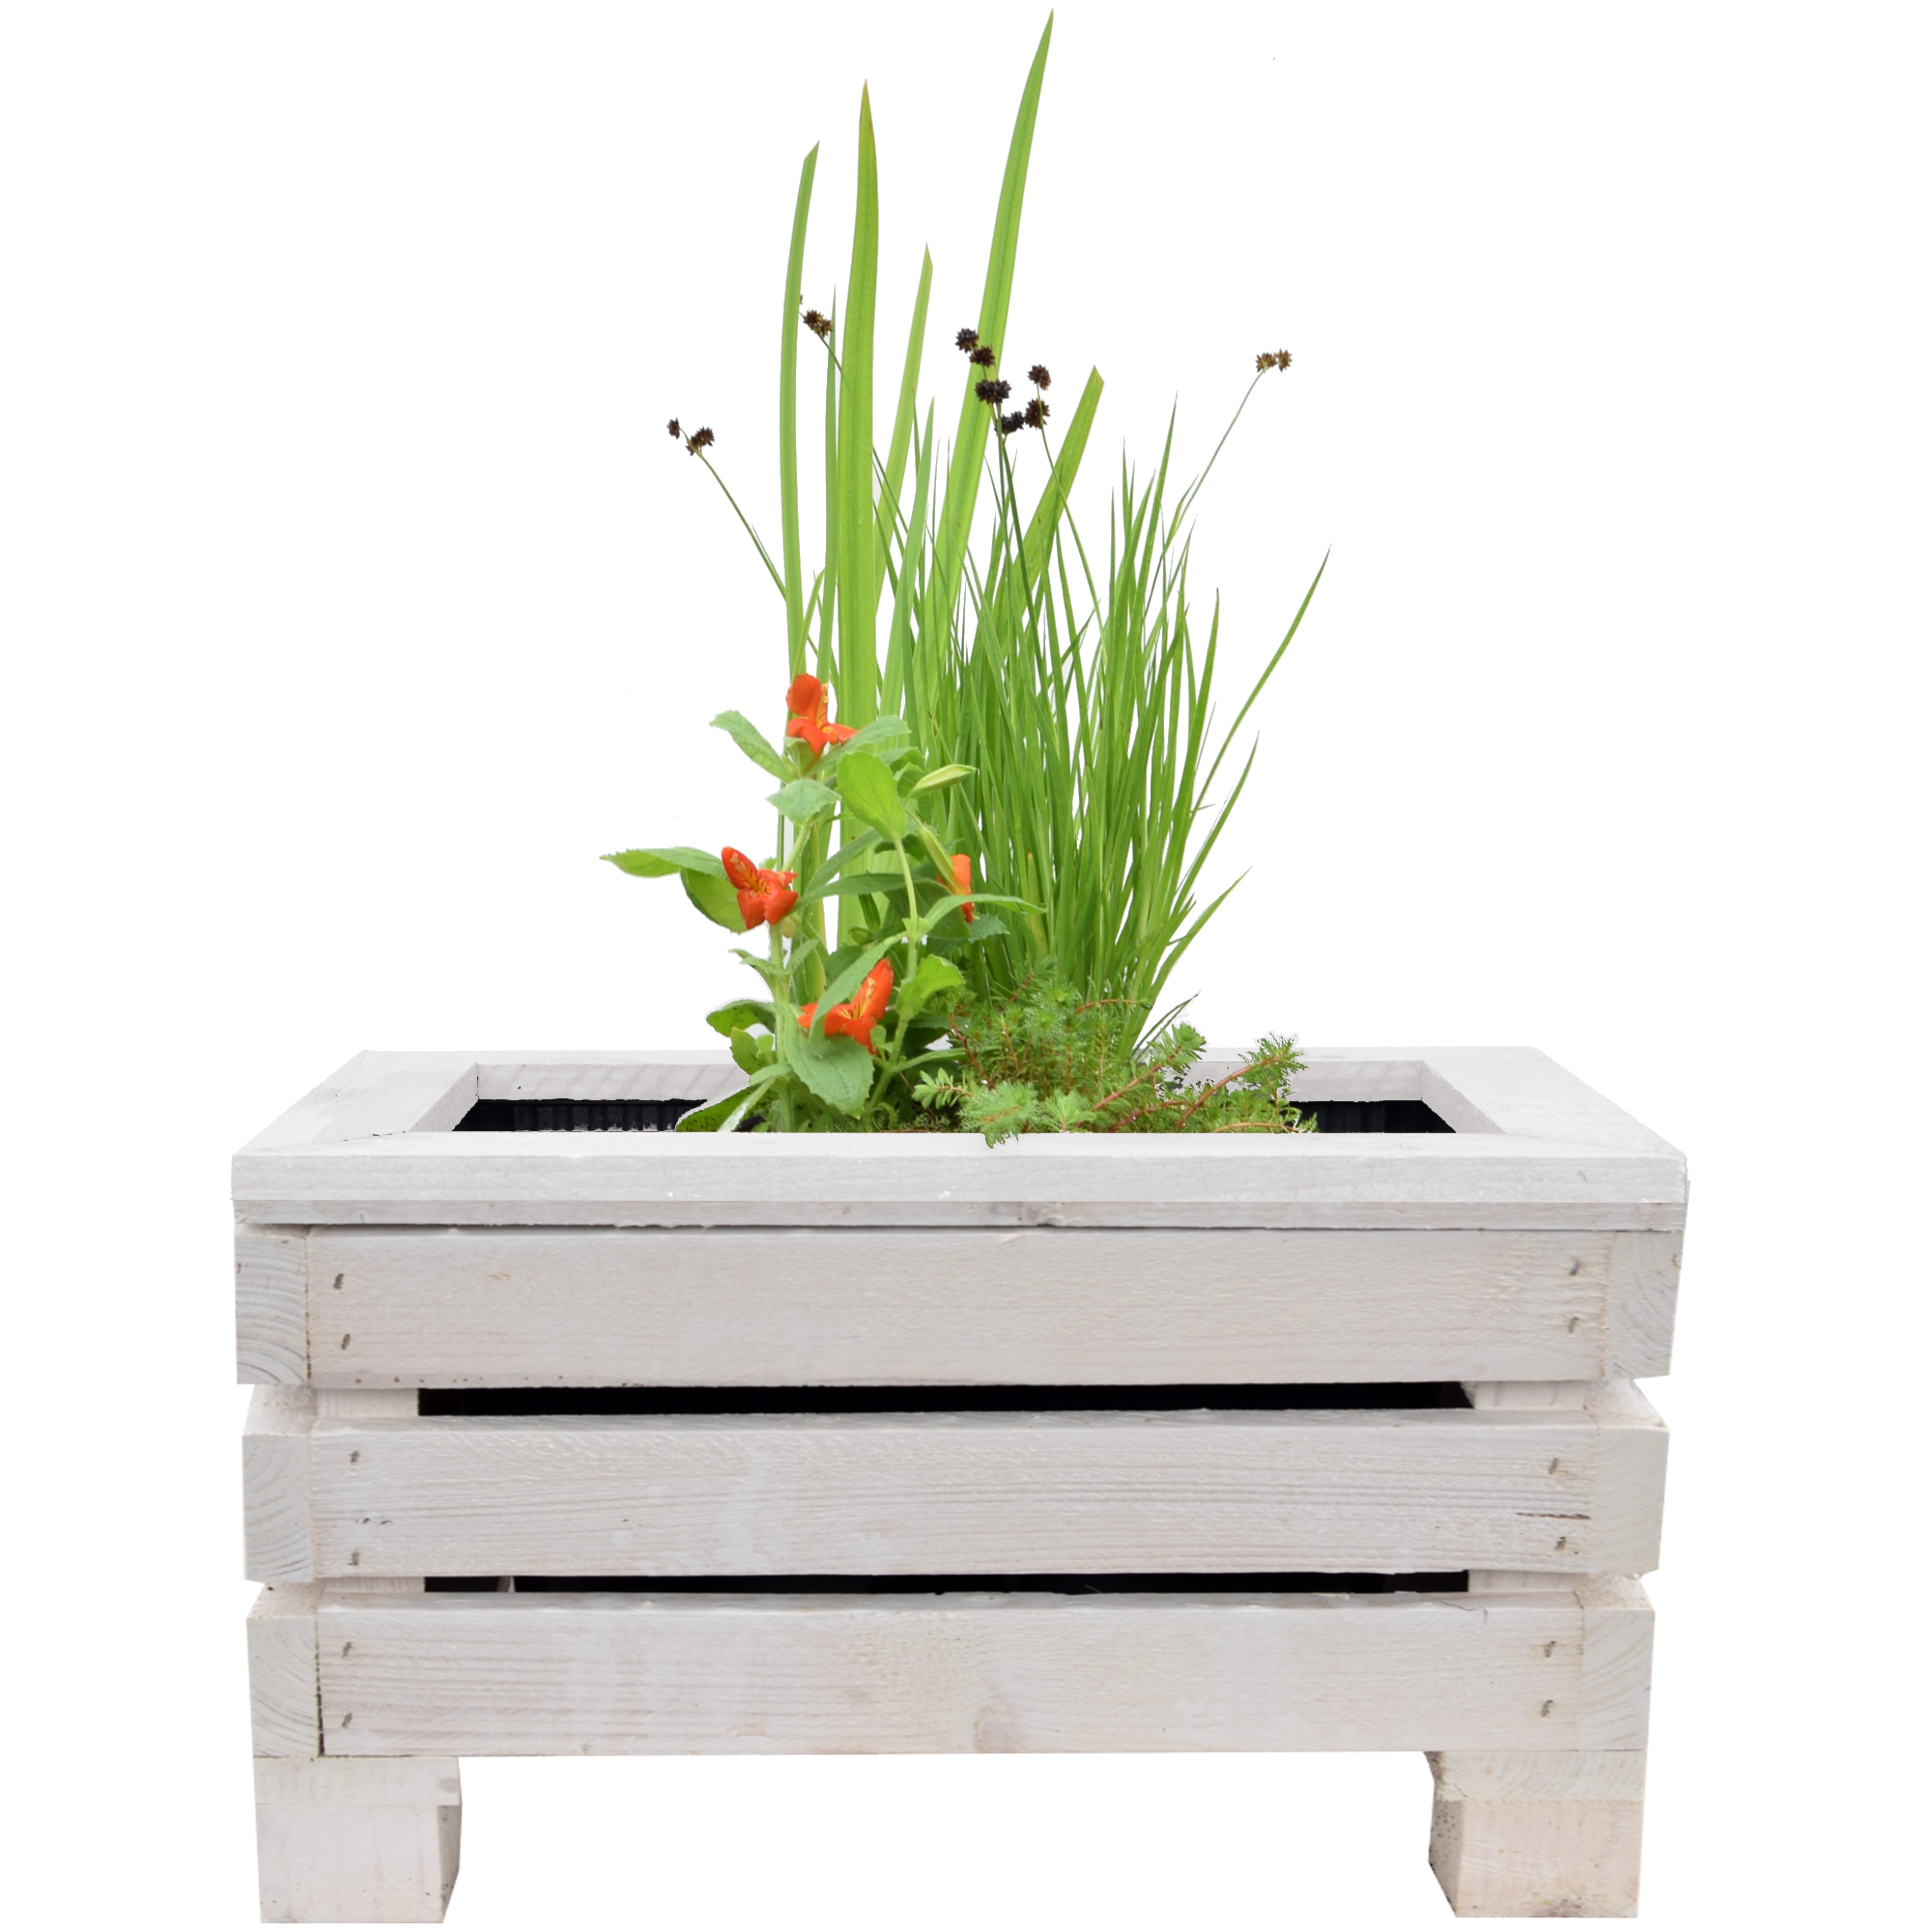 Miniteich-Set mit 4 Pflanzen und Teichkiste weiß 45 x 32 x 21 cm + product picture